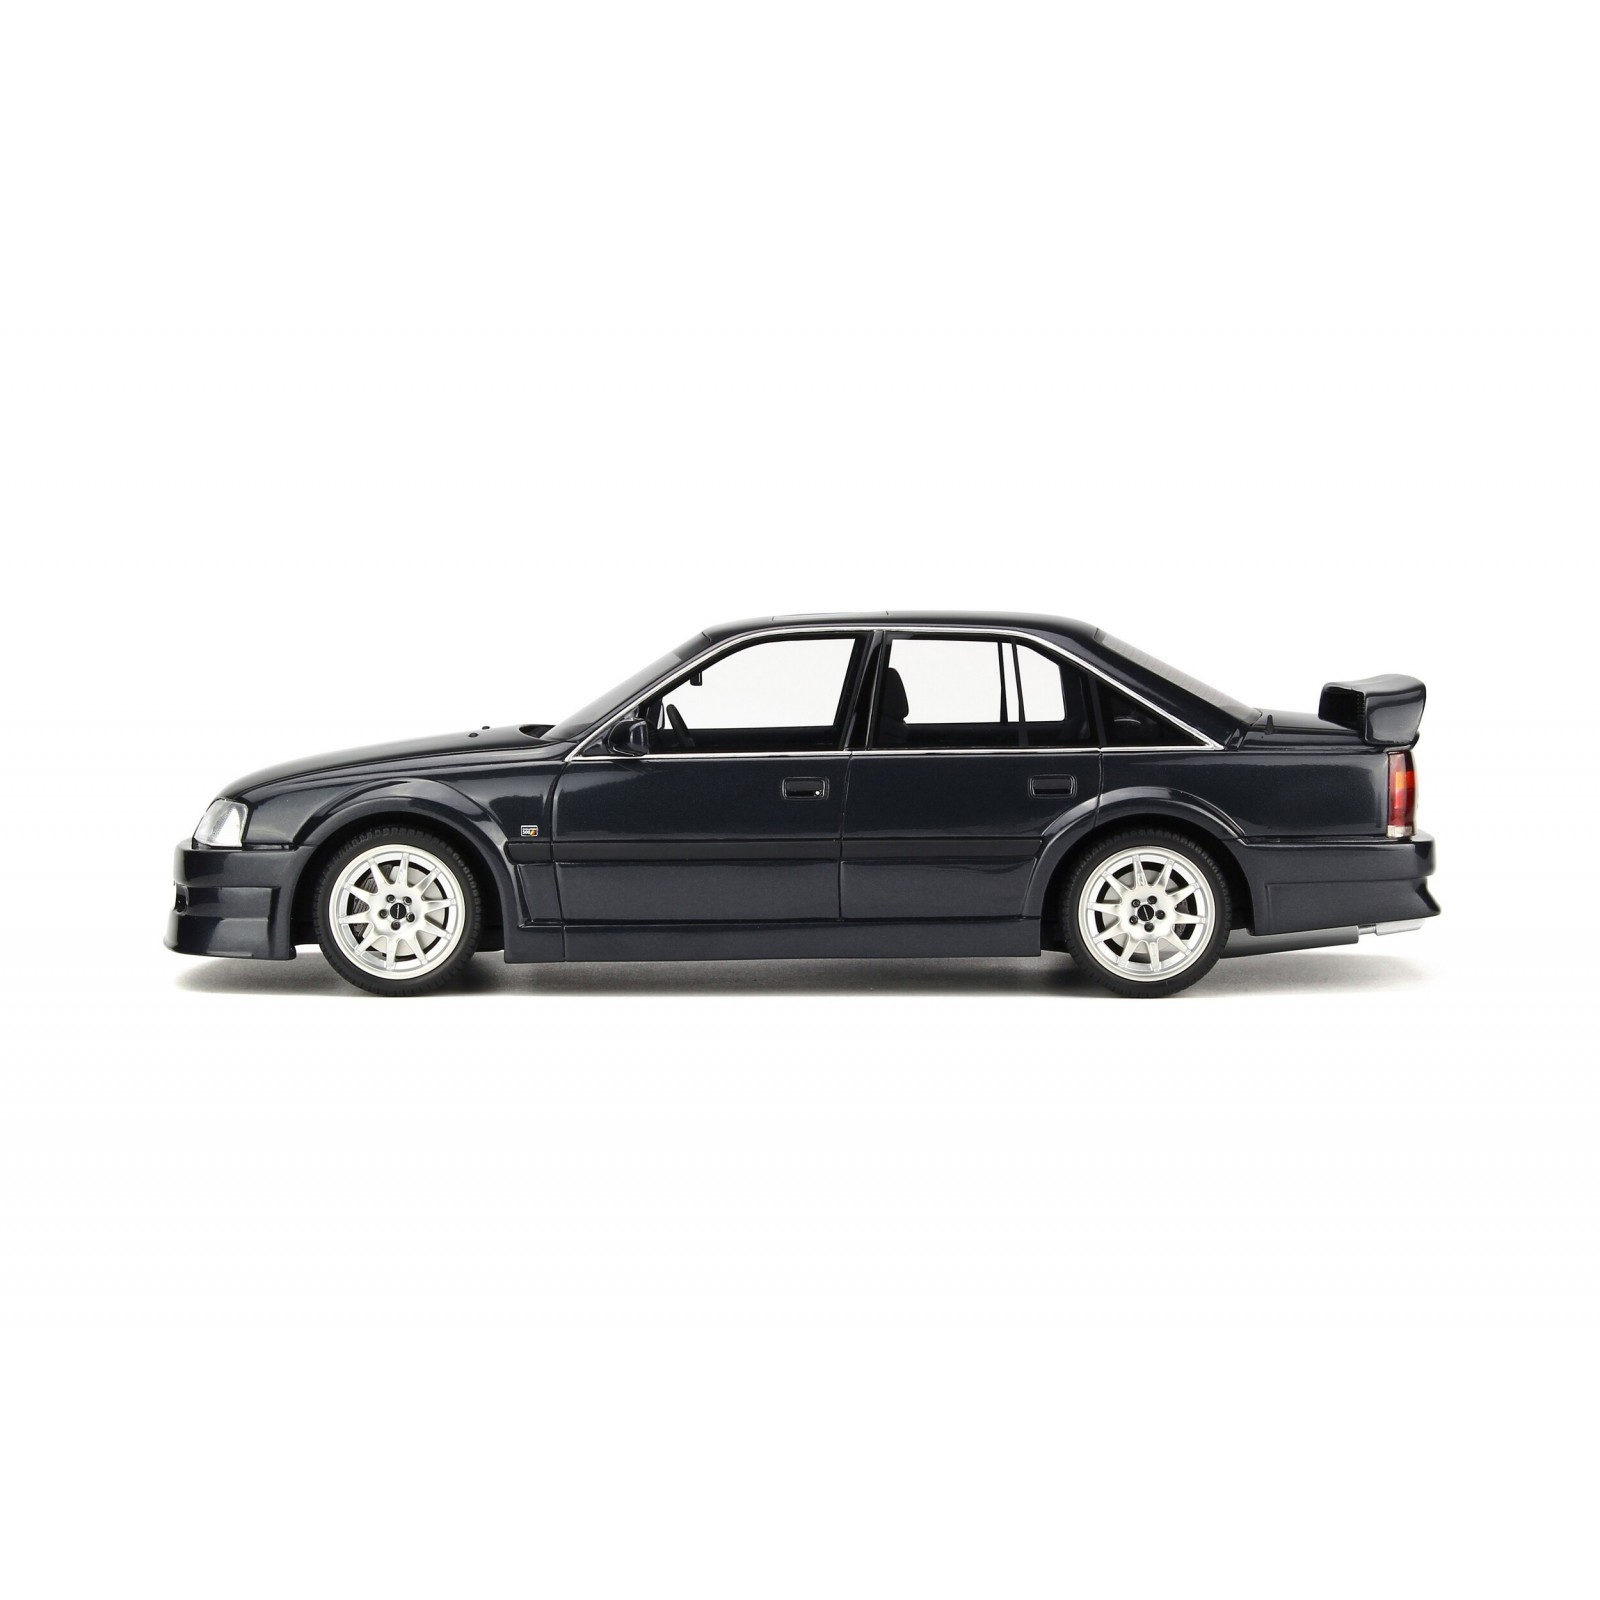 【新品在庫】■Otto 1/18 1990 オペルオメガ Evo 500 メタリックブラック 乗用車